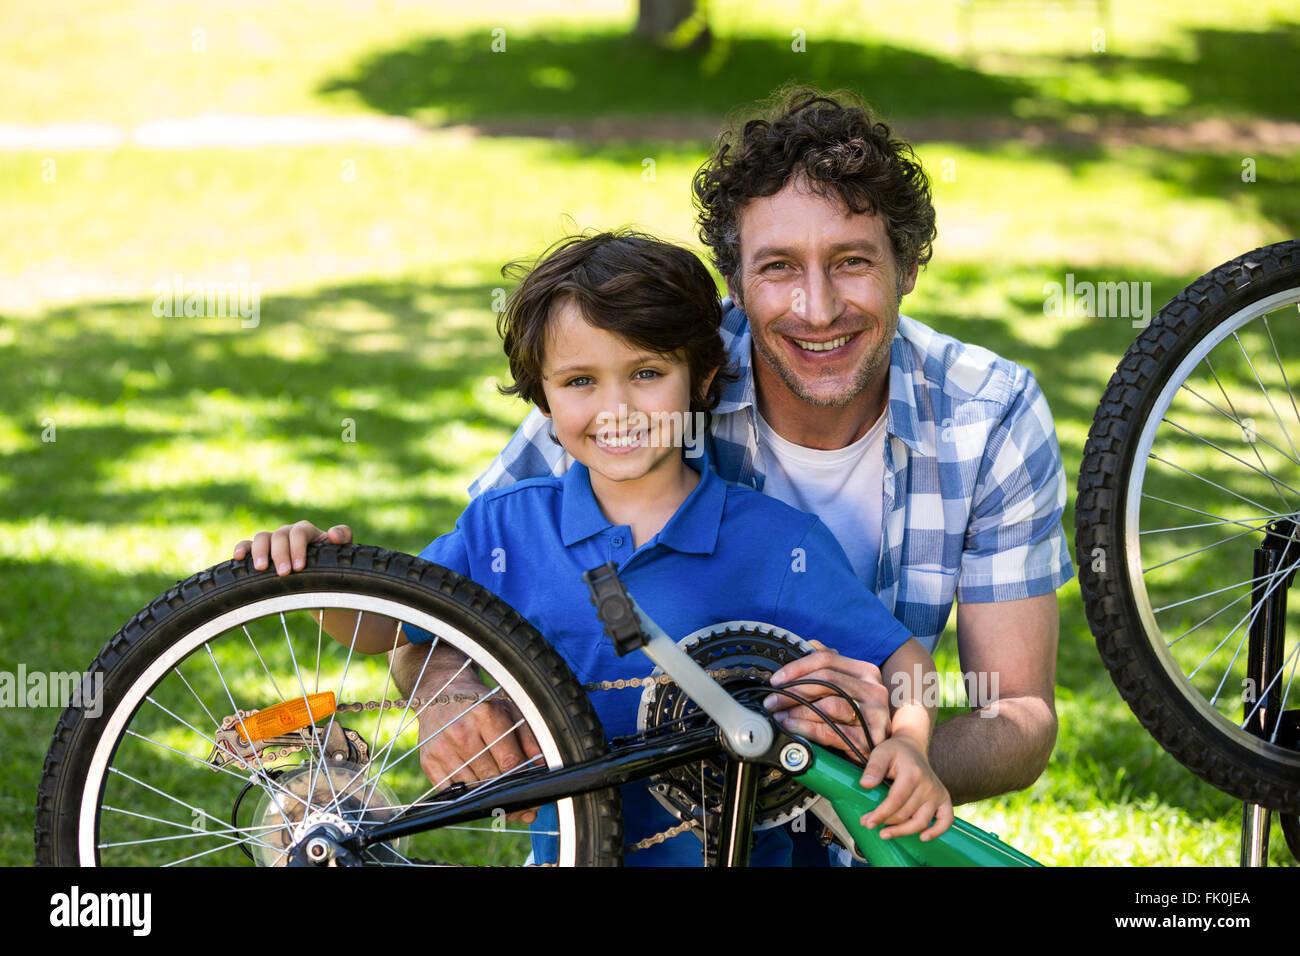 El padre y el hijo, la fijación de la bicicleta Foto de stock